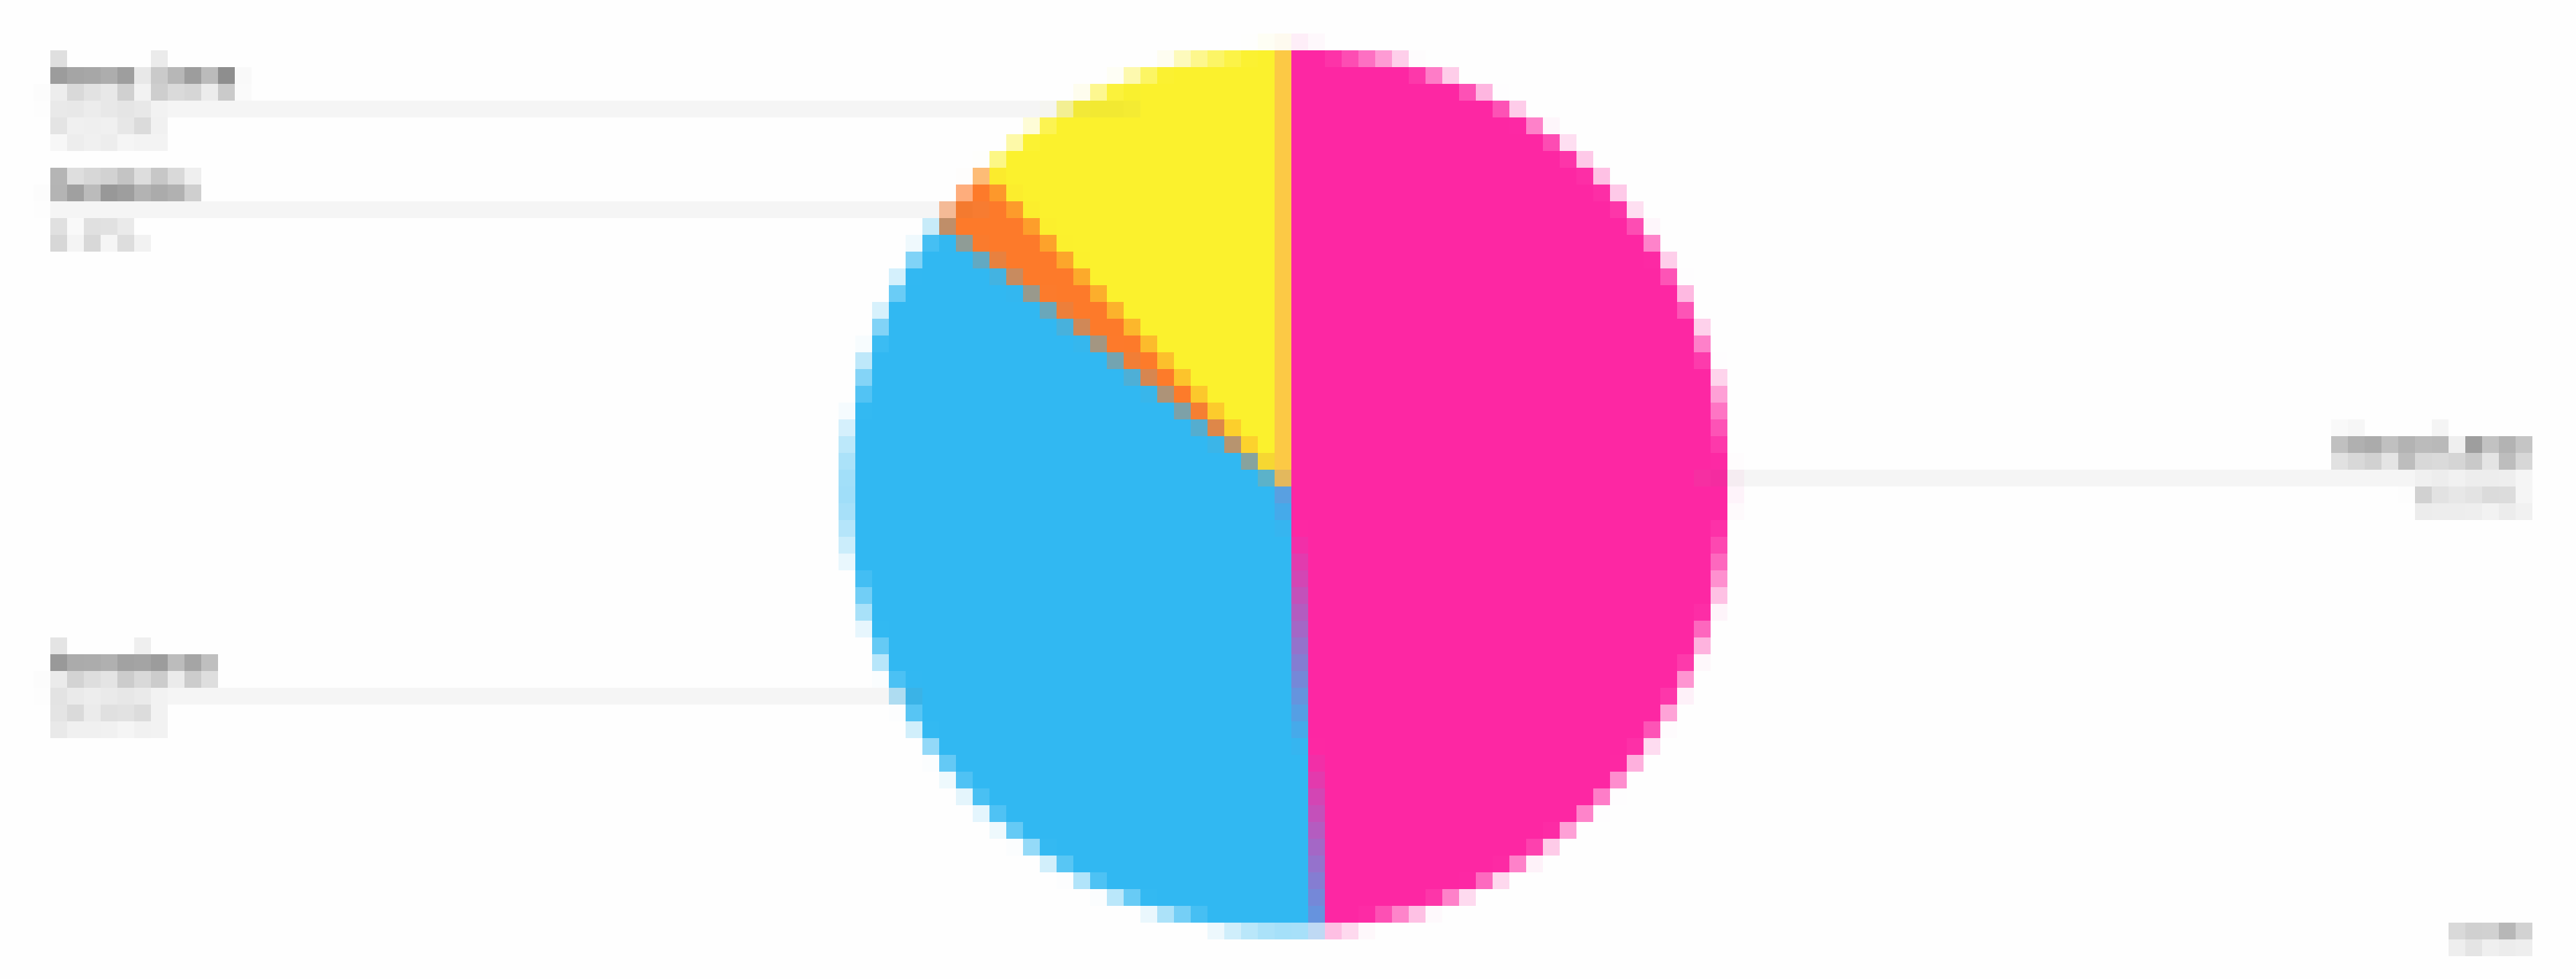 ein bunter Tortendiagramm mit einigen verschiedenen farbigen Teilen [AI]